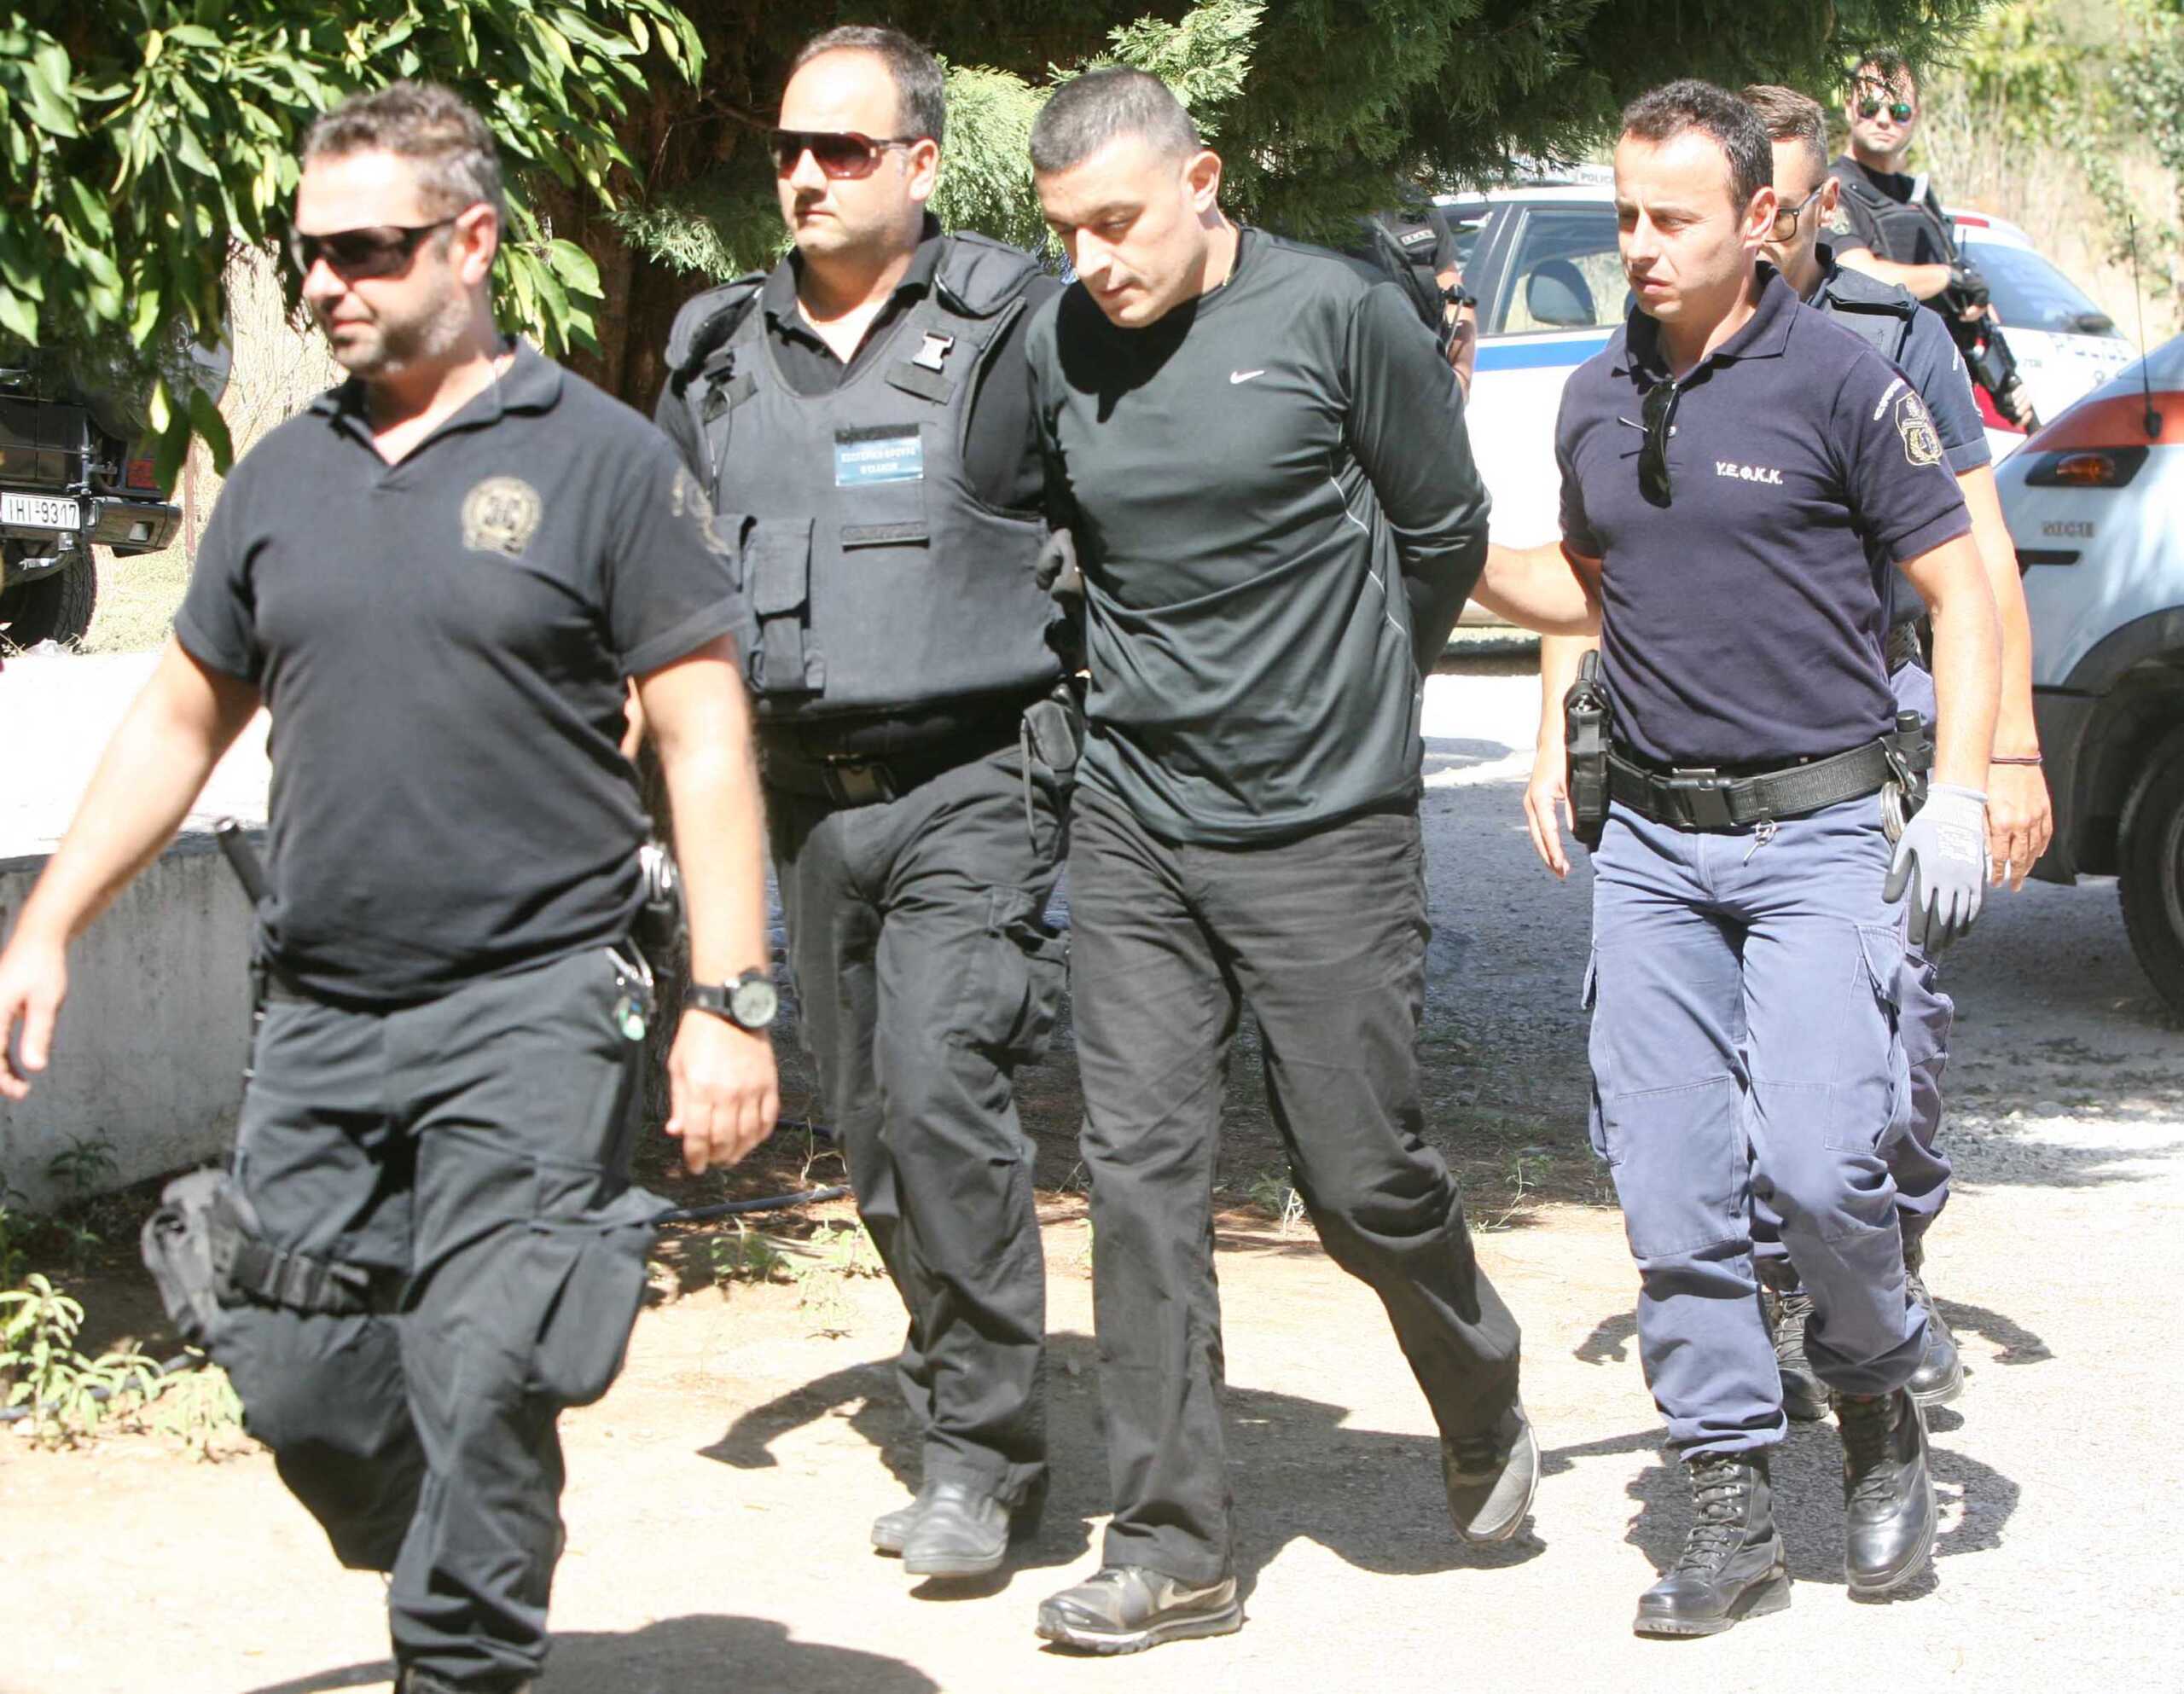 Ο Αλκέτ Ριζάι αθωώθηκε για τα κινητά και τα σουβλιά που είχαν βρεθεί στο κελί του